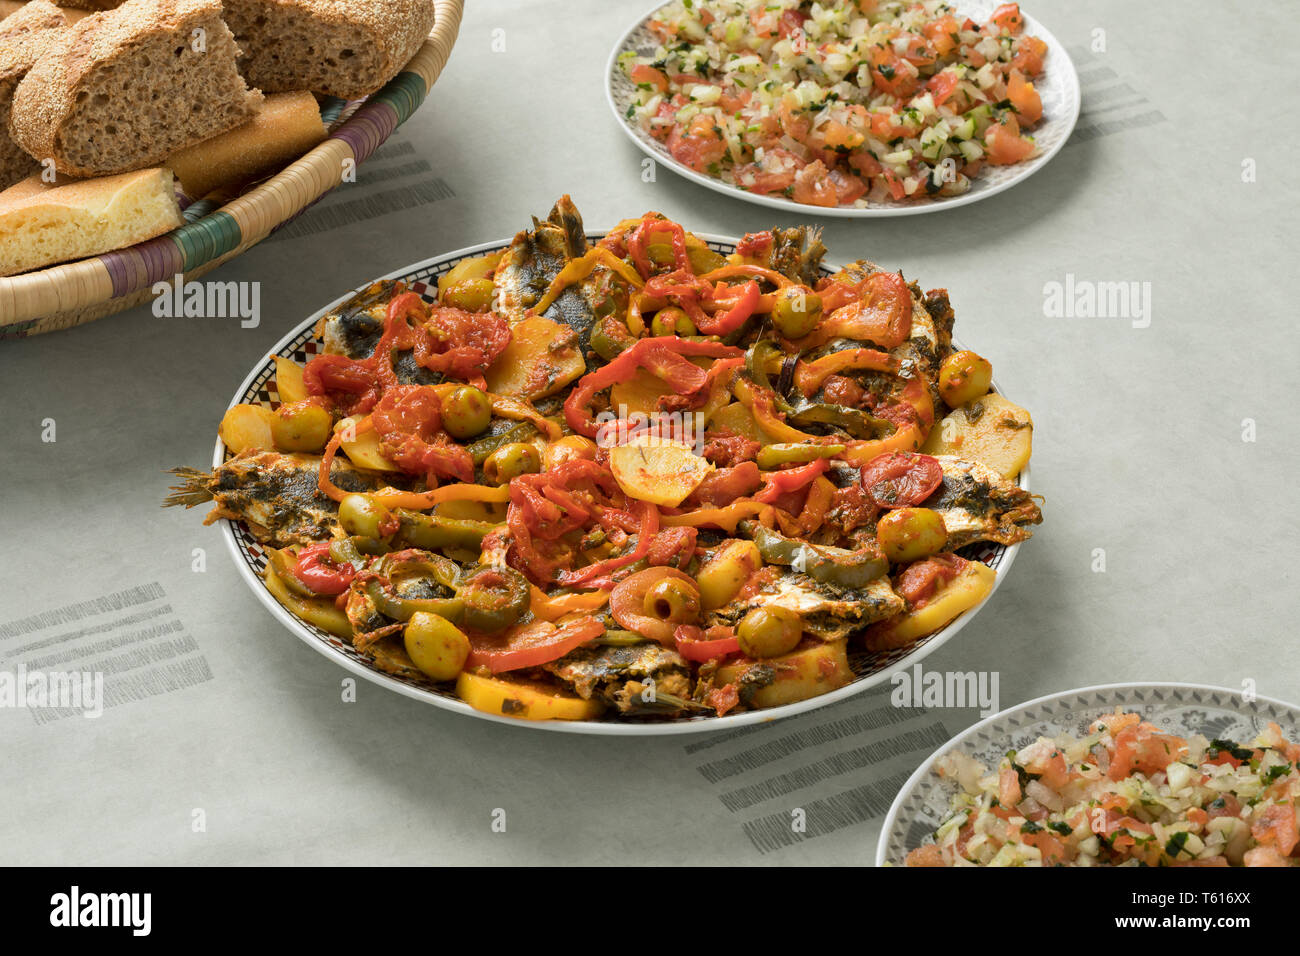 Traditionelle marokkanische Gerichte mit Sardinen und Gemüse, Salat und ein Korb mit Brot Stockfoto